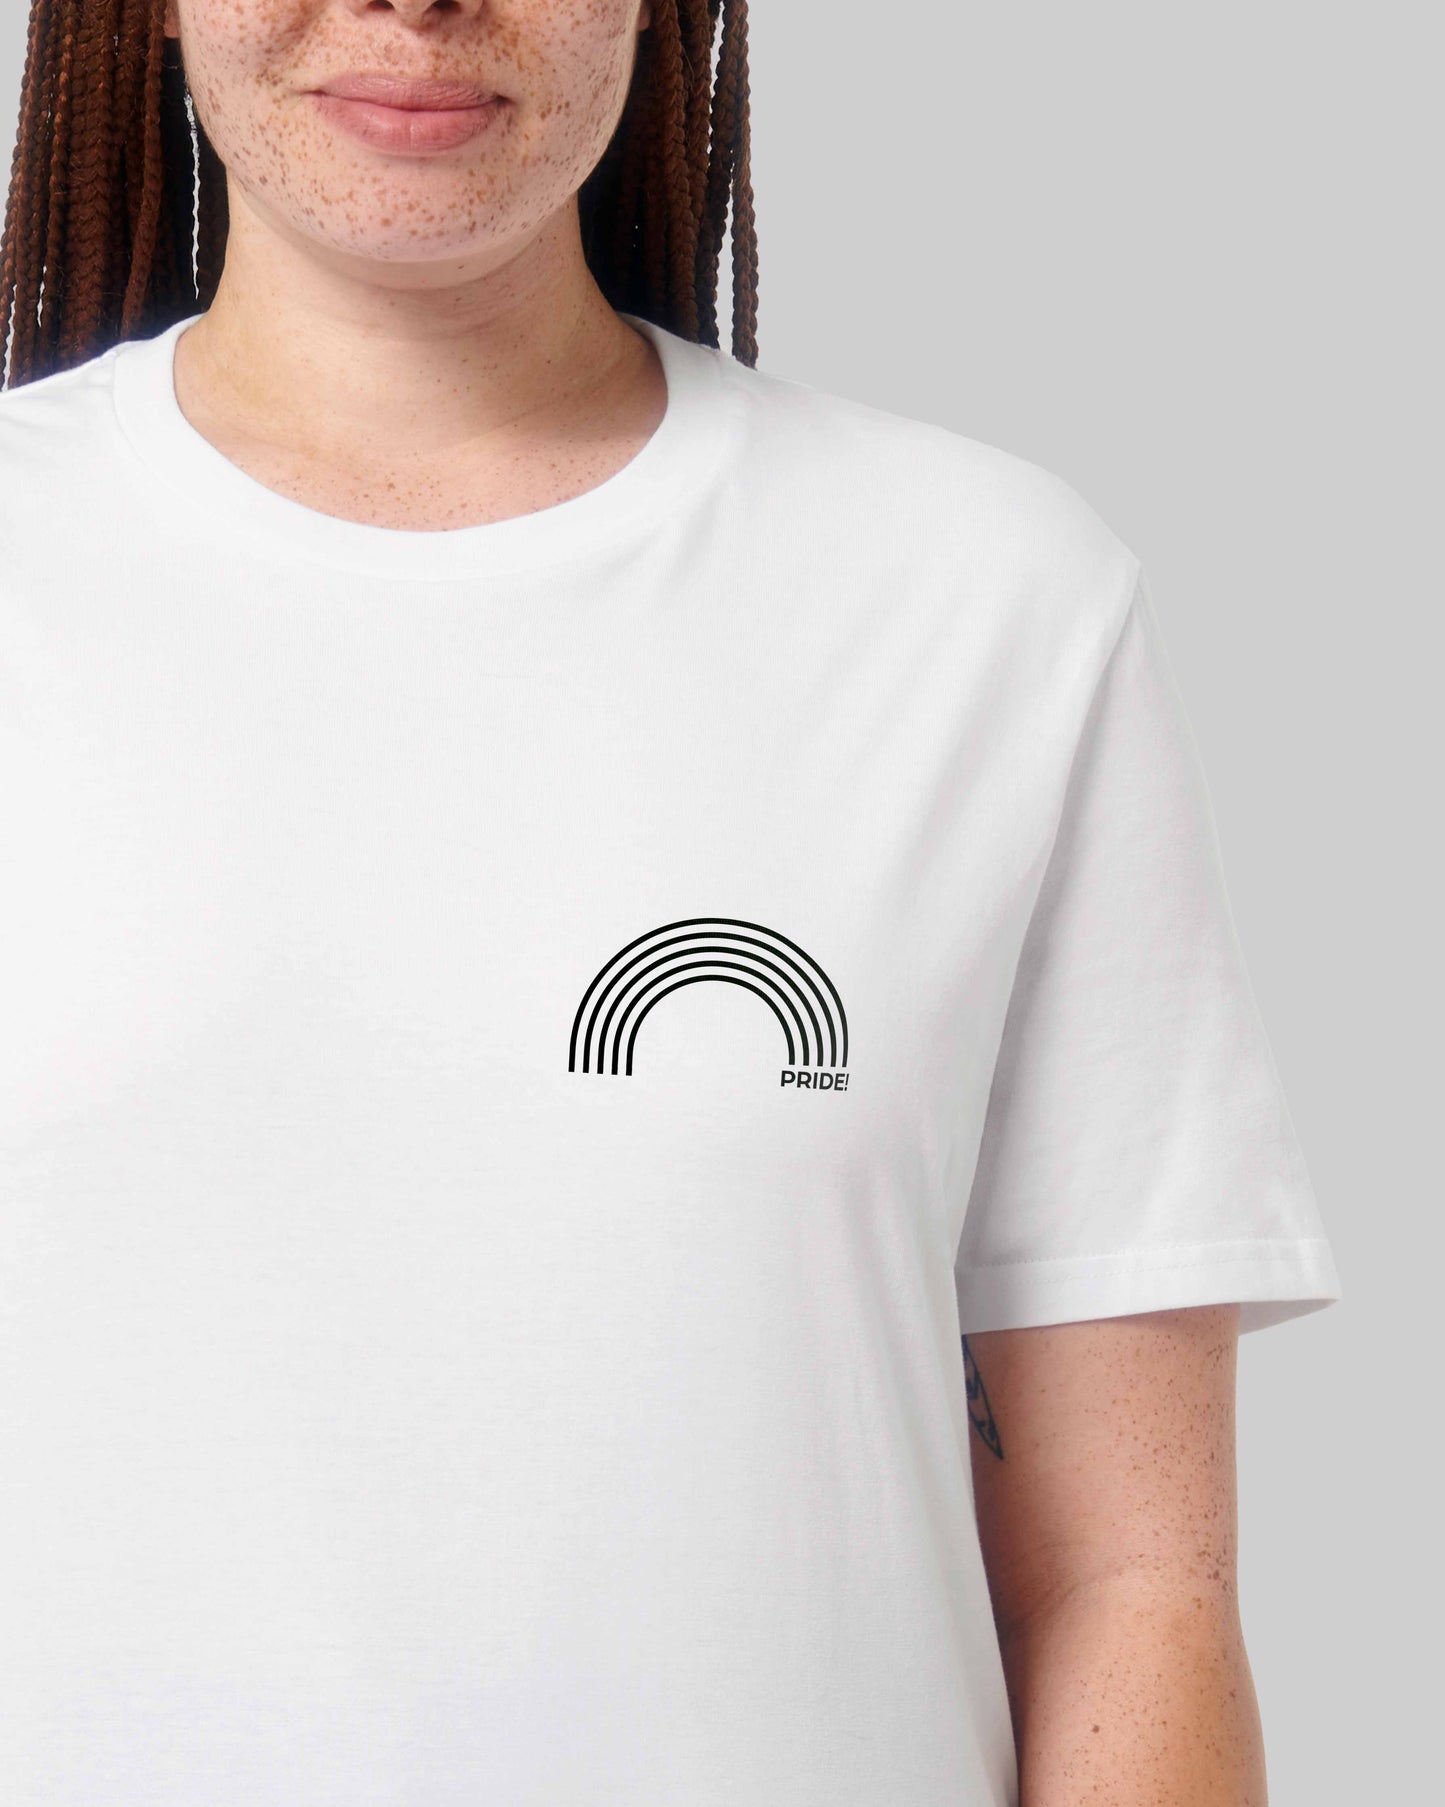 EINHORST® unisex Organic Shirt in Weiß mit dem Motiv "pride Regenbogen" in der Kombination schwarzer Regenbogen mit schwarzer Schrift, Bild von weiblicher Person mit Shirt